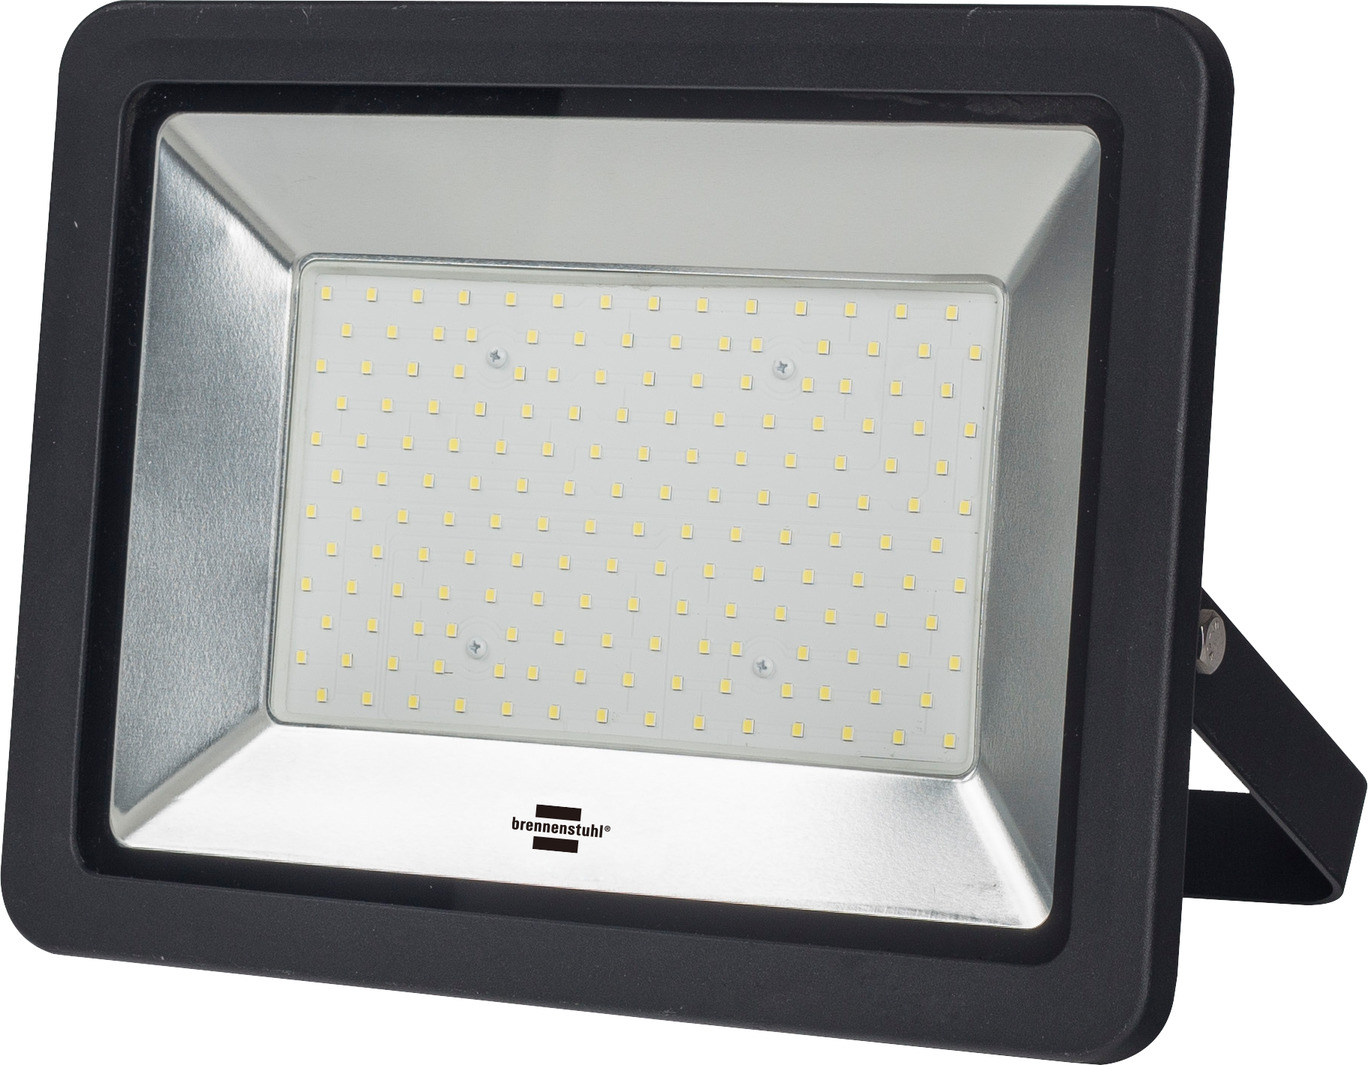 porter Eftermæle flertal Slim SMD-LED Strahler 148 W, 12800 lm, IP65, schwarz, mit Anschlussklemme |  brennenstuhl®